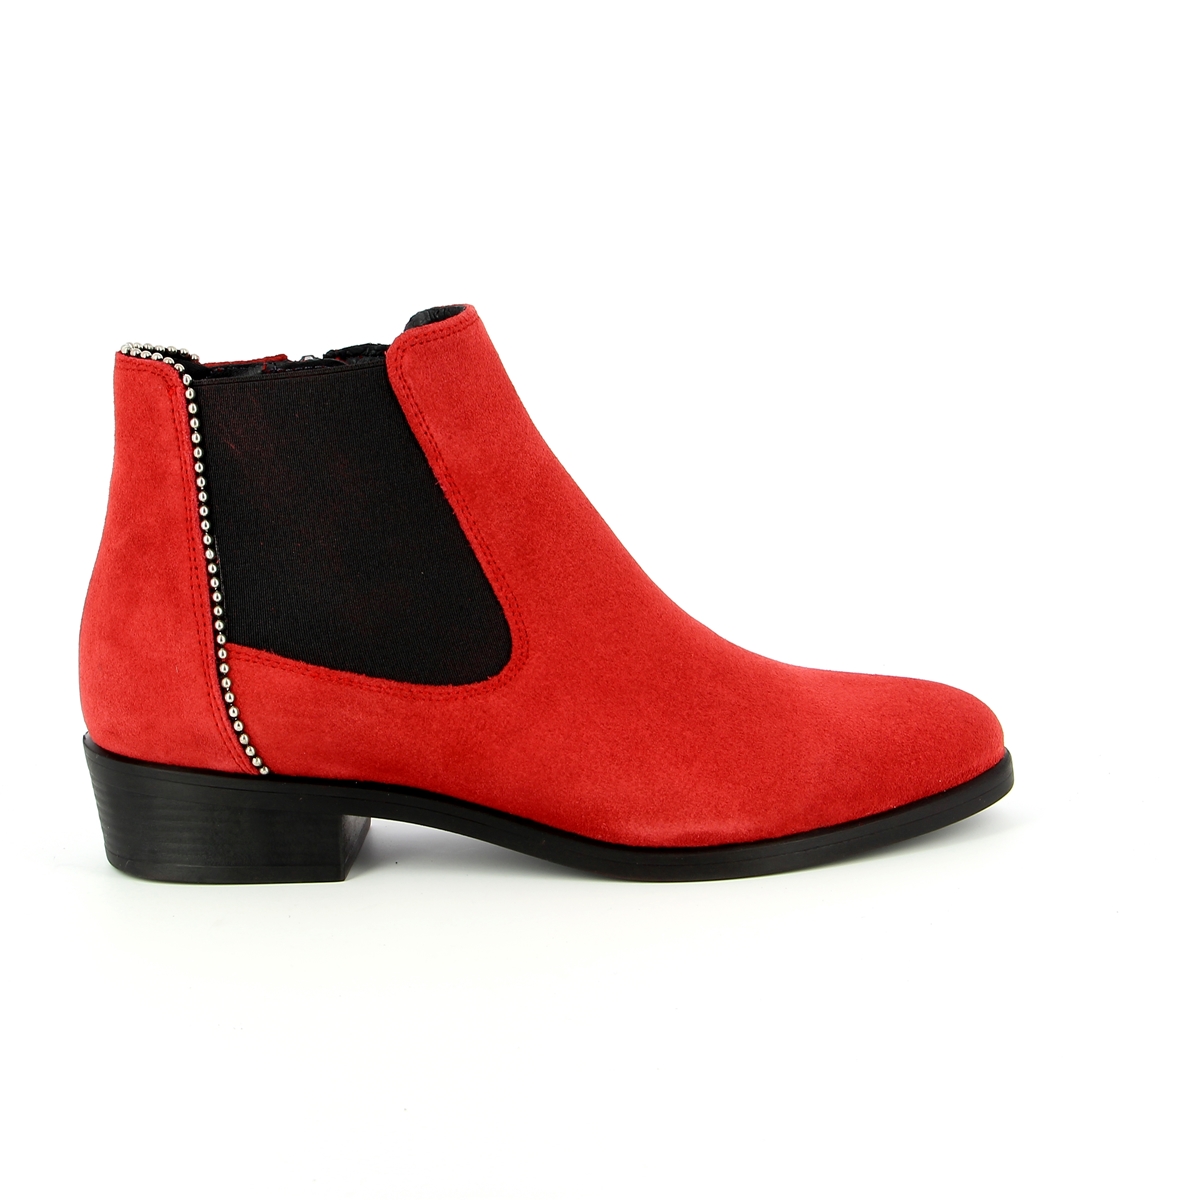 Kanna Boots rood